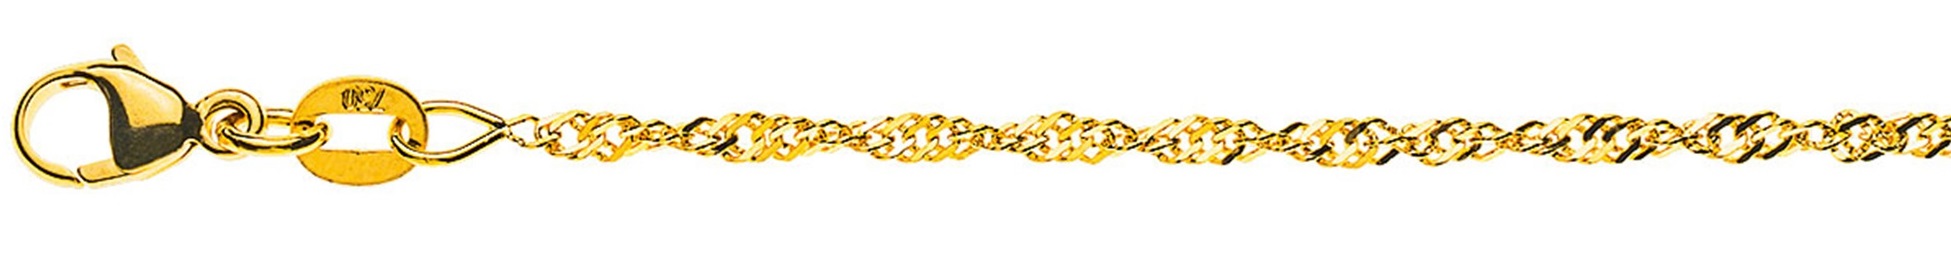 AURONOS Prestige Necklace Yellow Gold 18K Singapore Chain 60cm 1.9mm